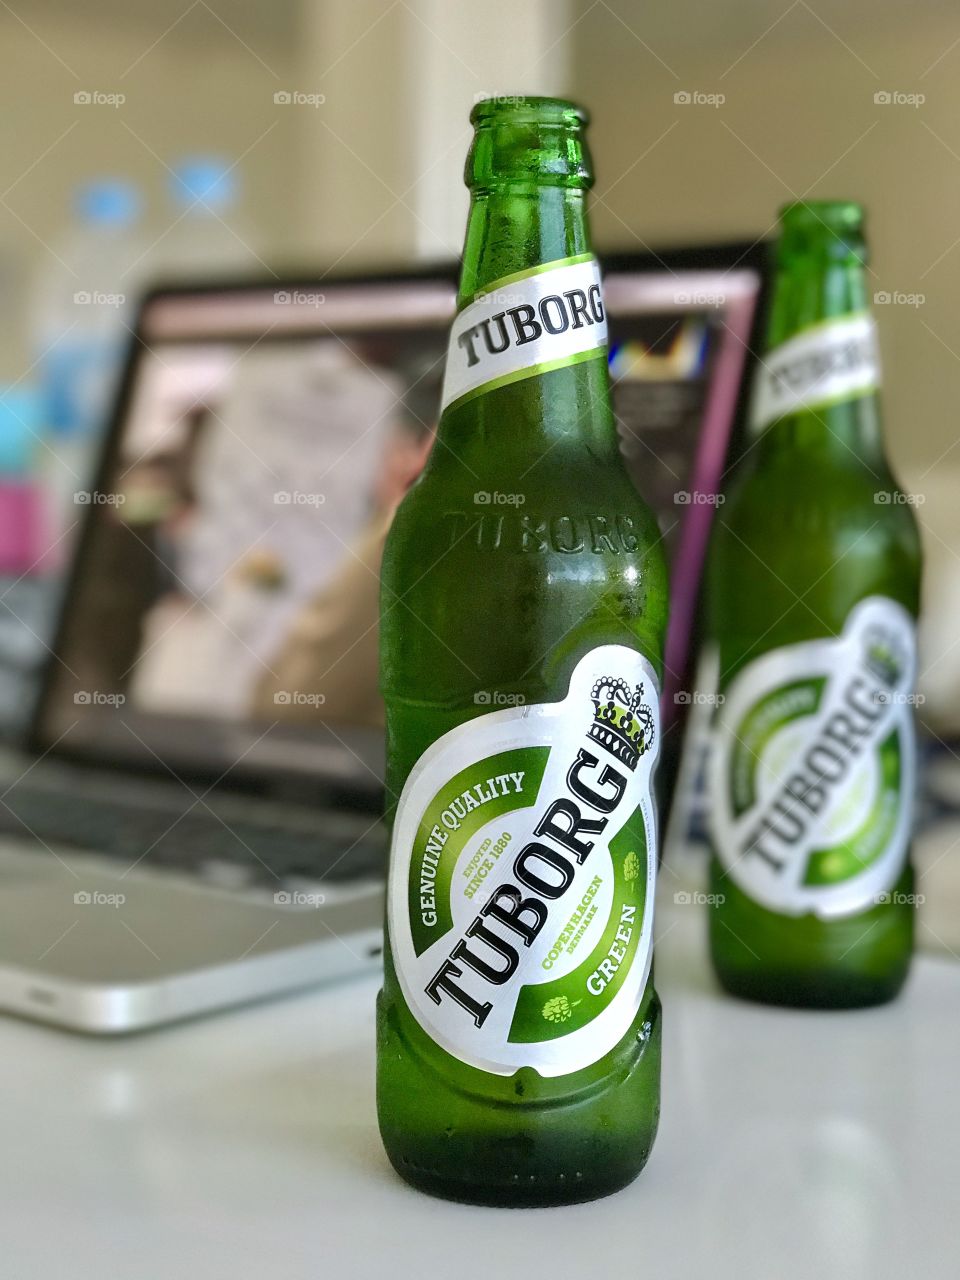 Green bottles of Tuborg beer from northern suburb of Copenhagen, Denmark, on working desk